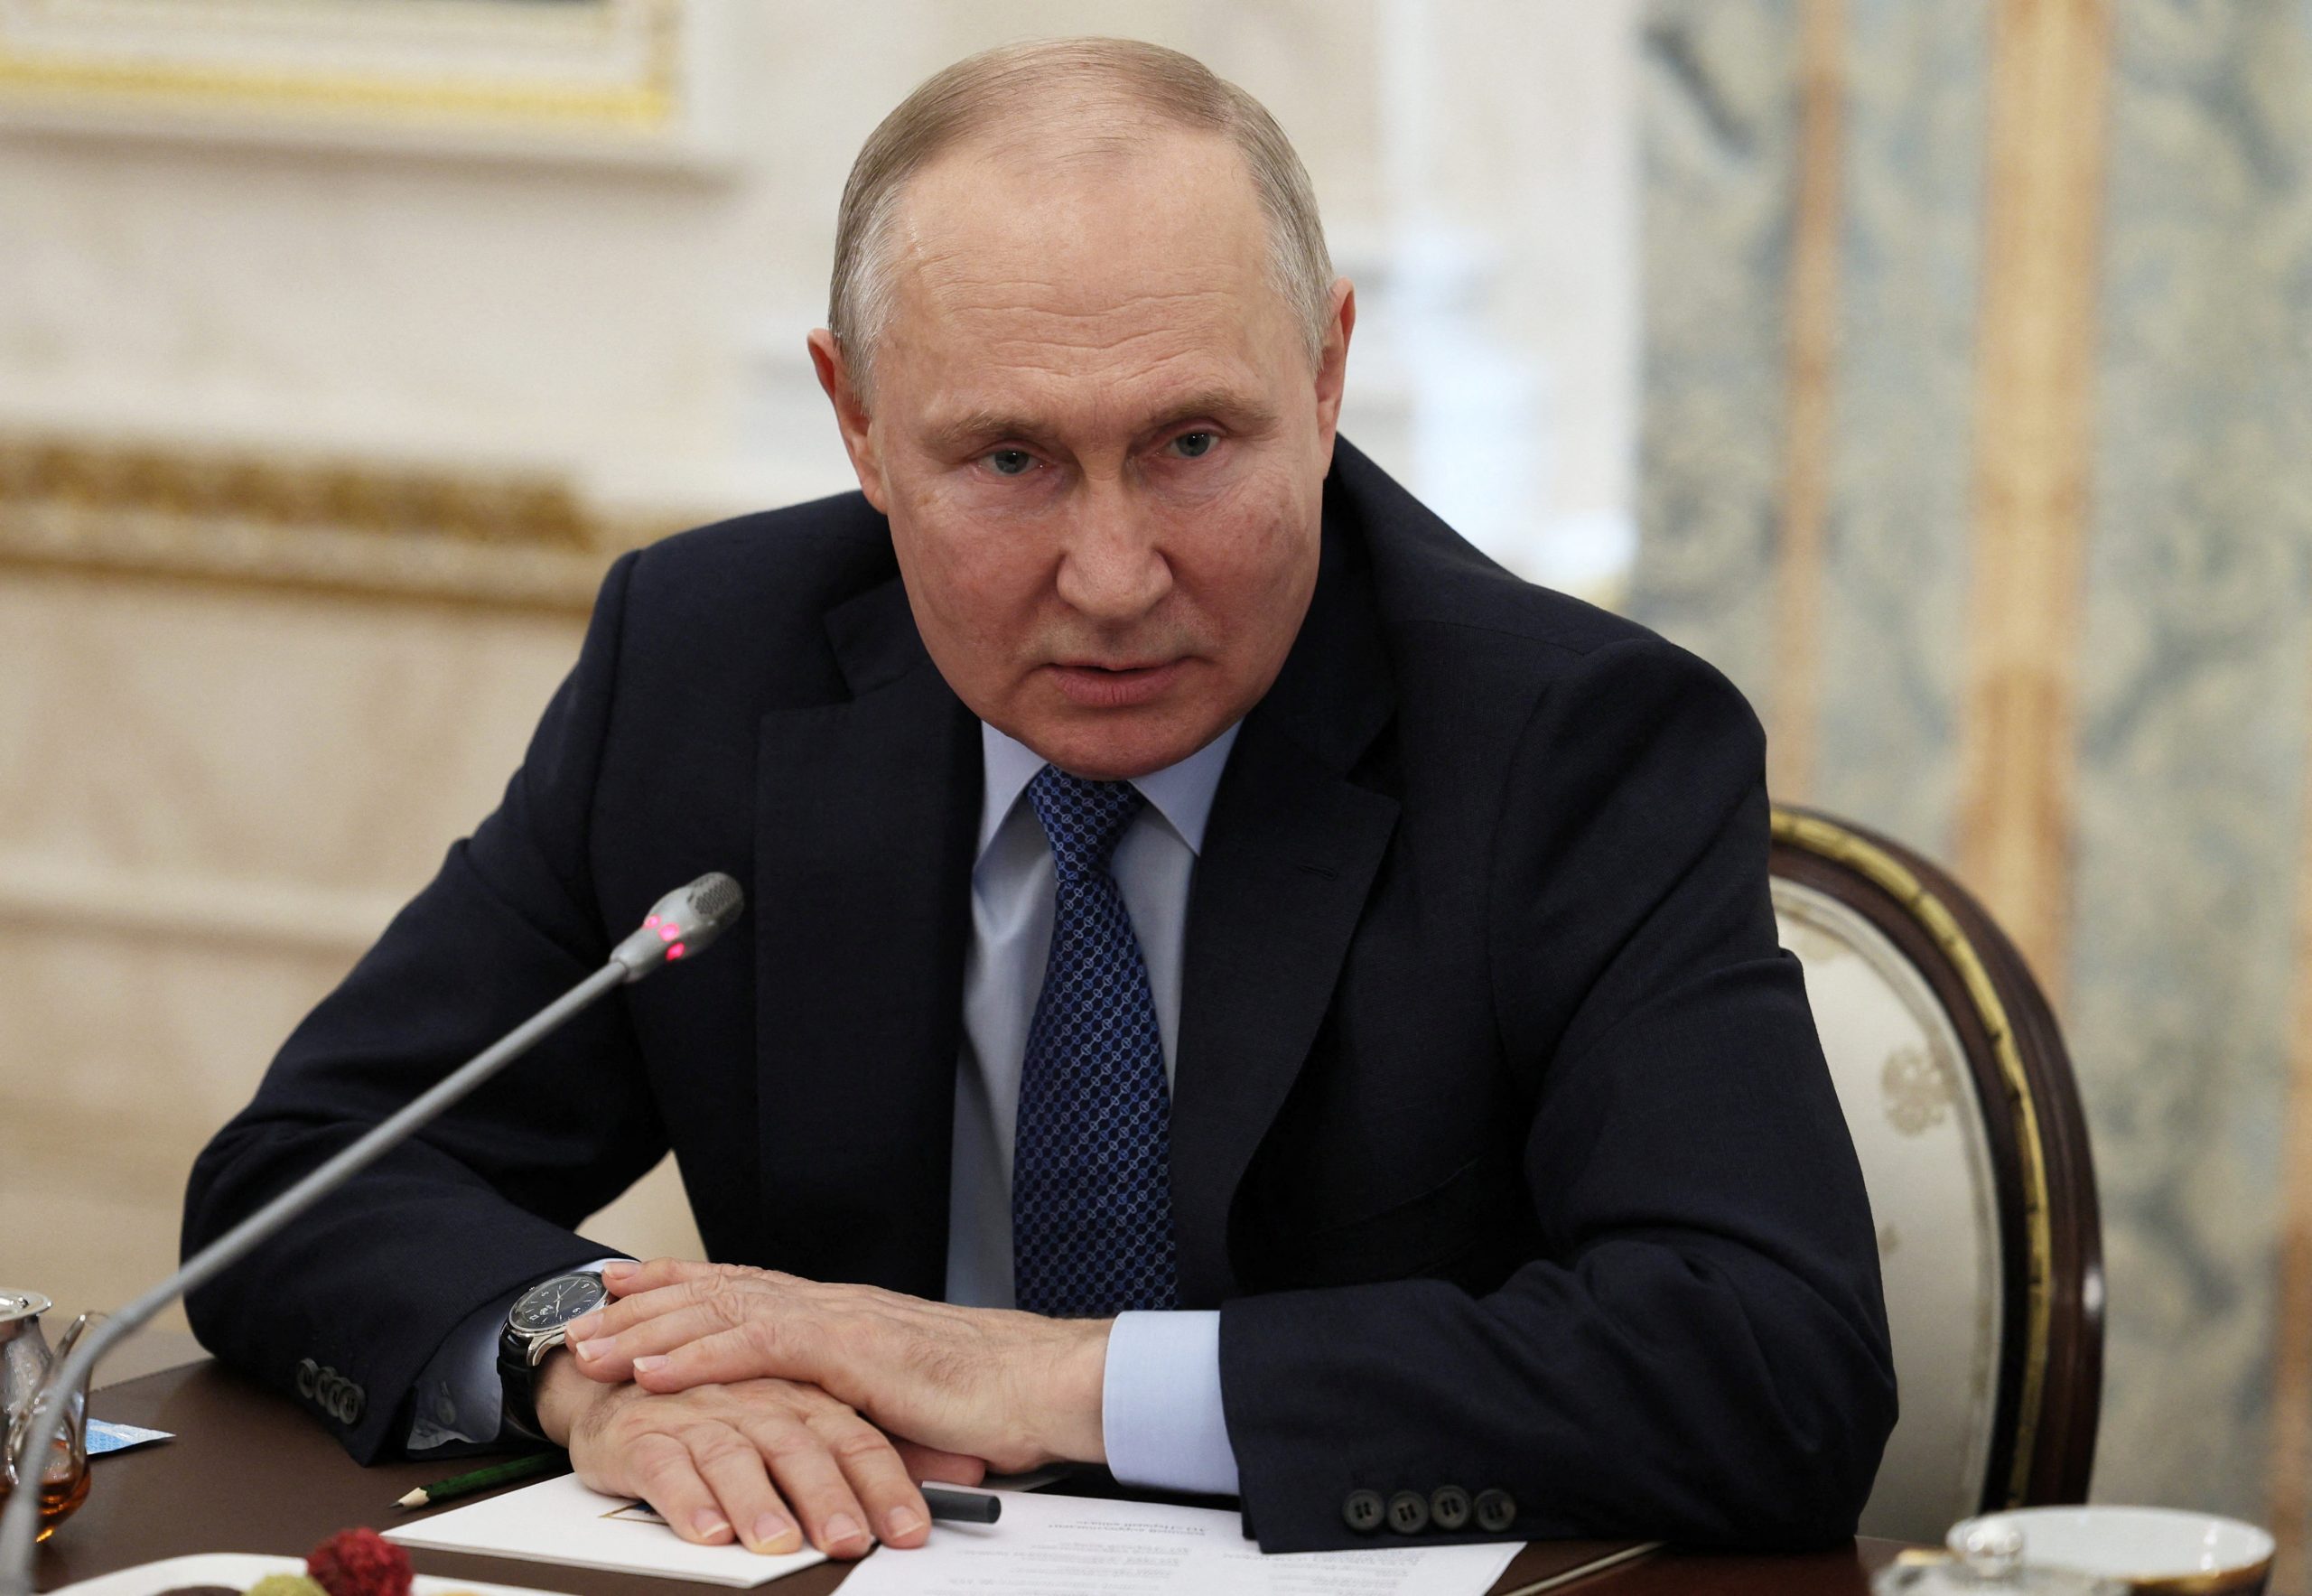 Β.Πούτιν: «Η Ρωσία θα δημιουργήσει μια “ουδέτερη ζώνη” με την Ουκρανία για να προστατεύσει την επικράτειά της»